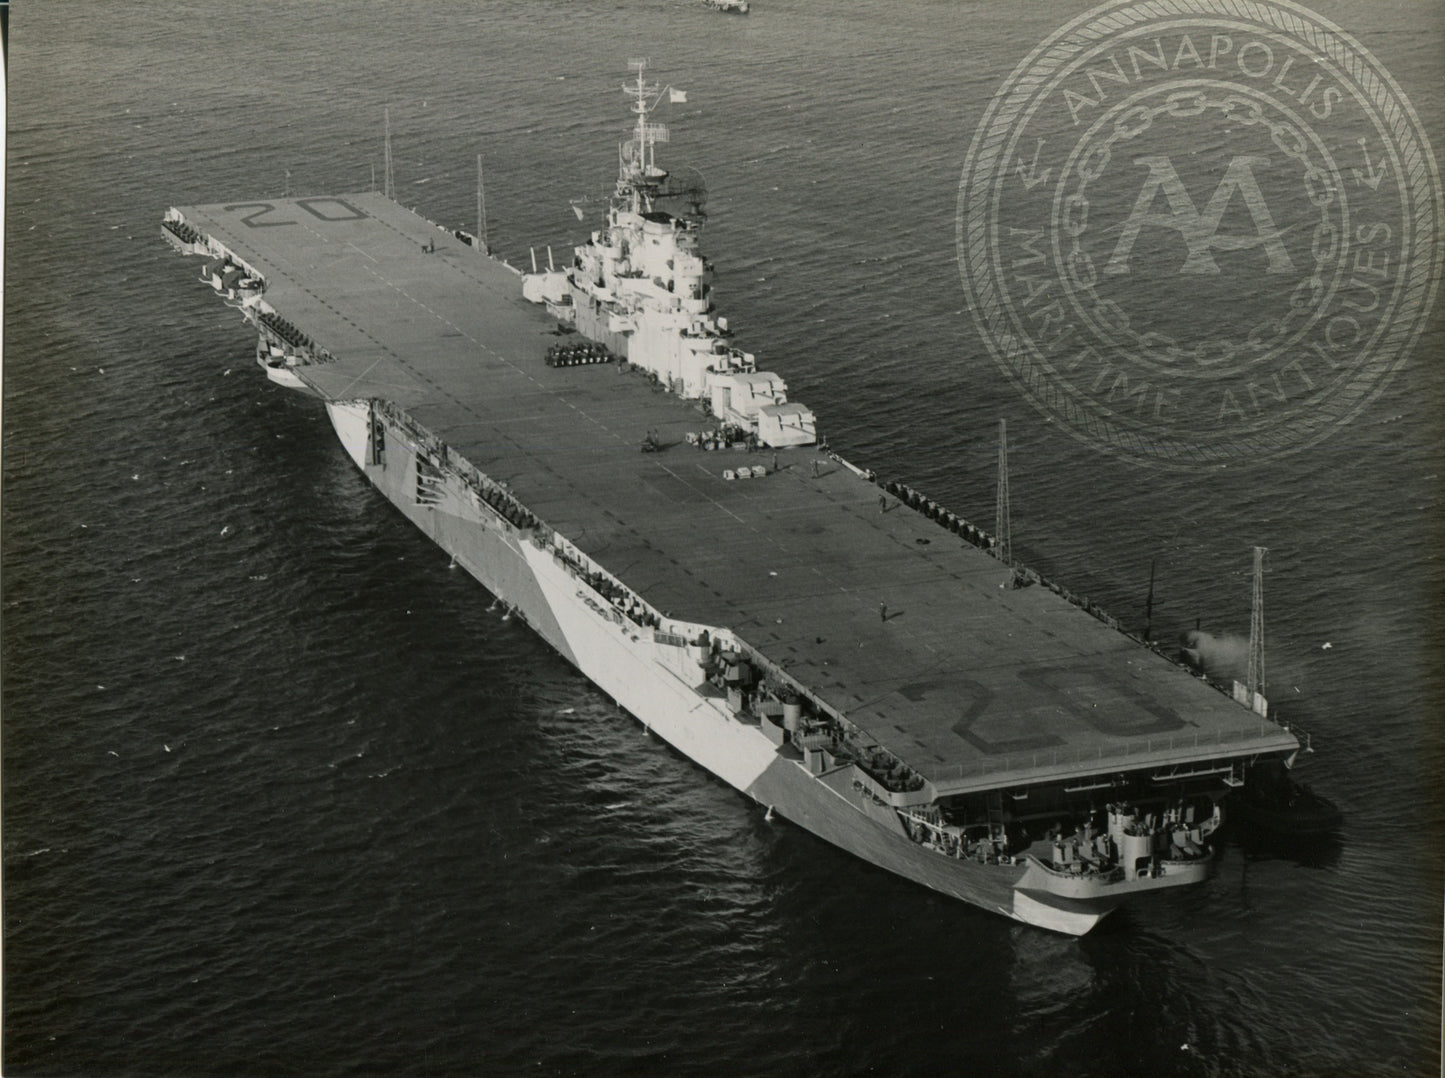 USS Bennington (CV-20) Aircraft Carrier